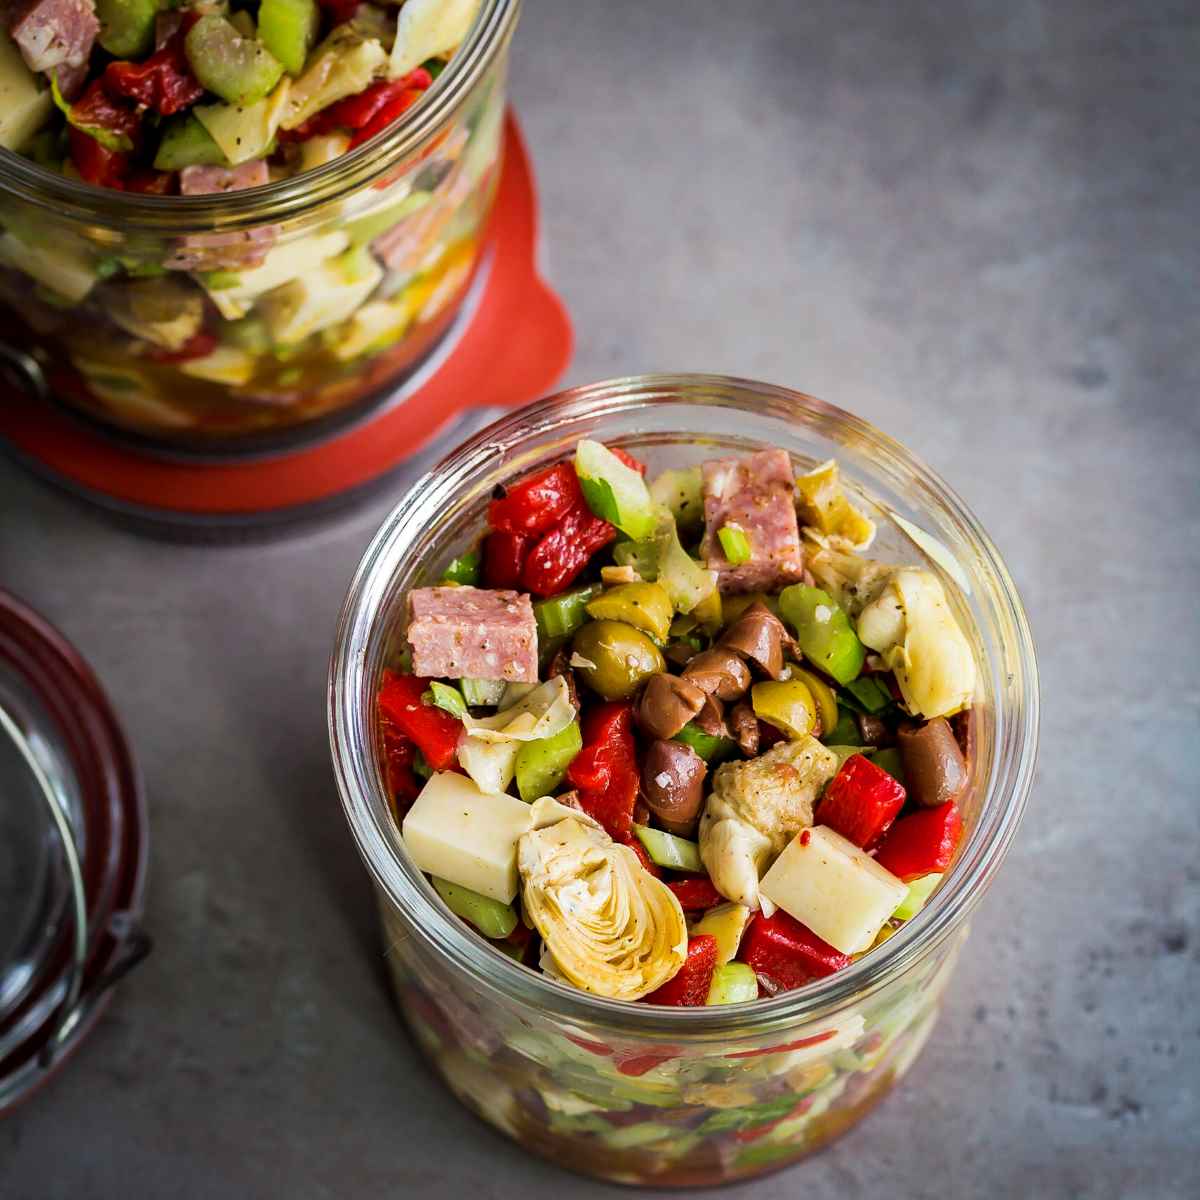 https://www.spoonabilities.com/wp-content/uploads/2019/06/Antipasto-Salad-in-a-jar-Spoonabilities.jpg